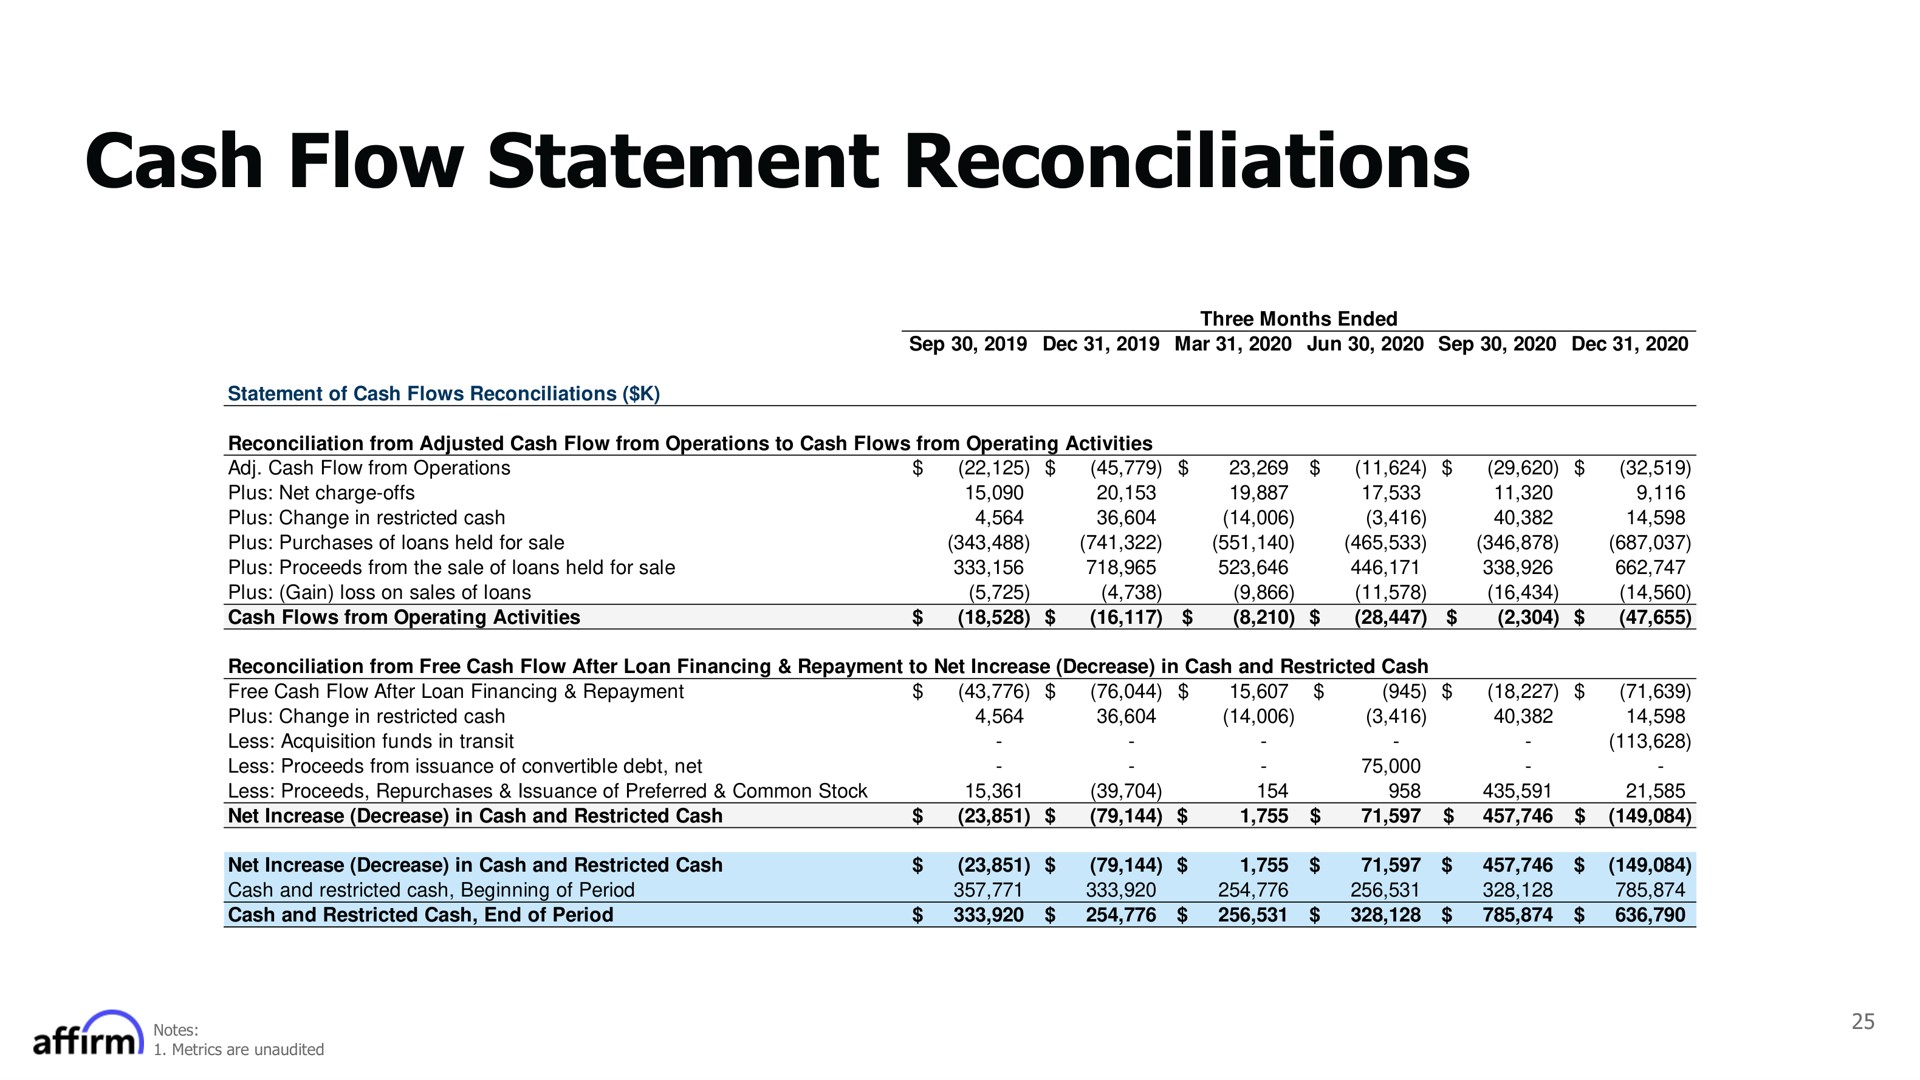 cash flow statement reconciliations | Affirm